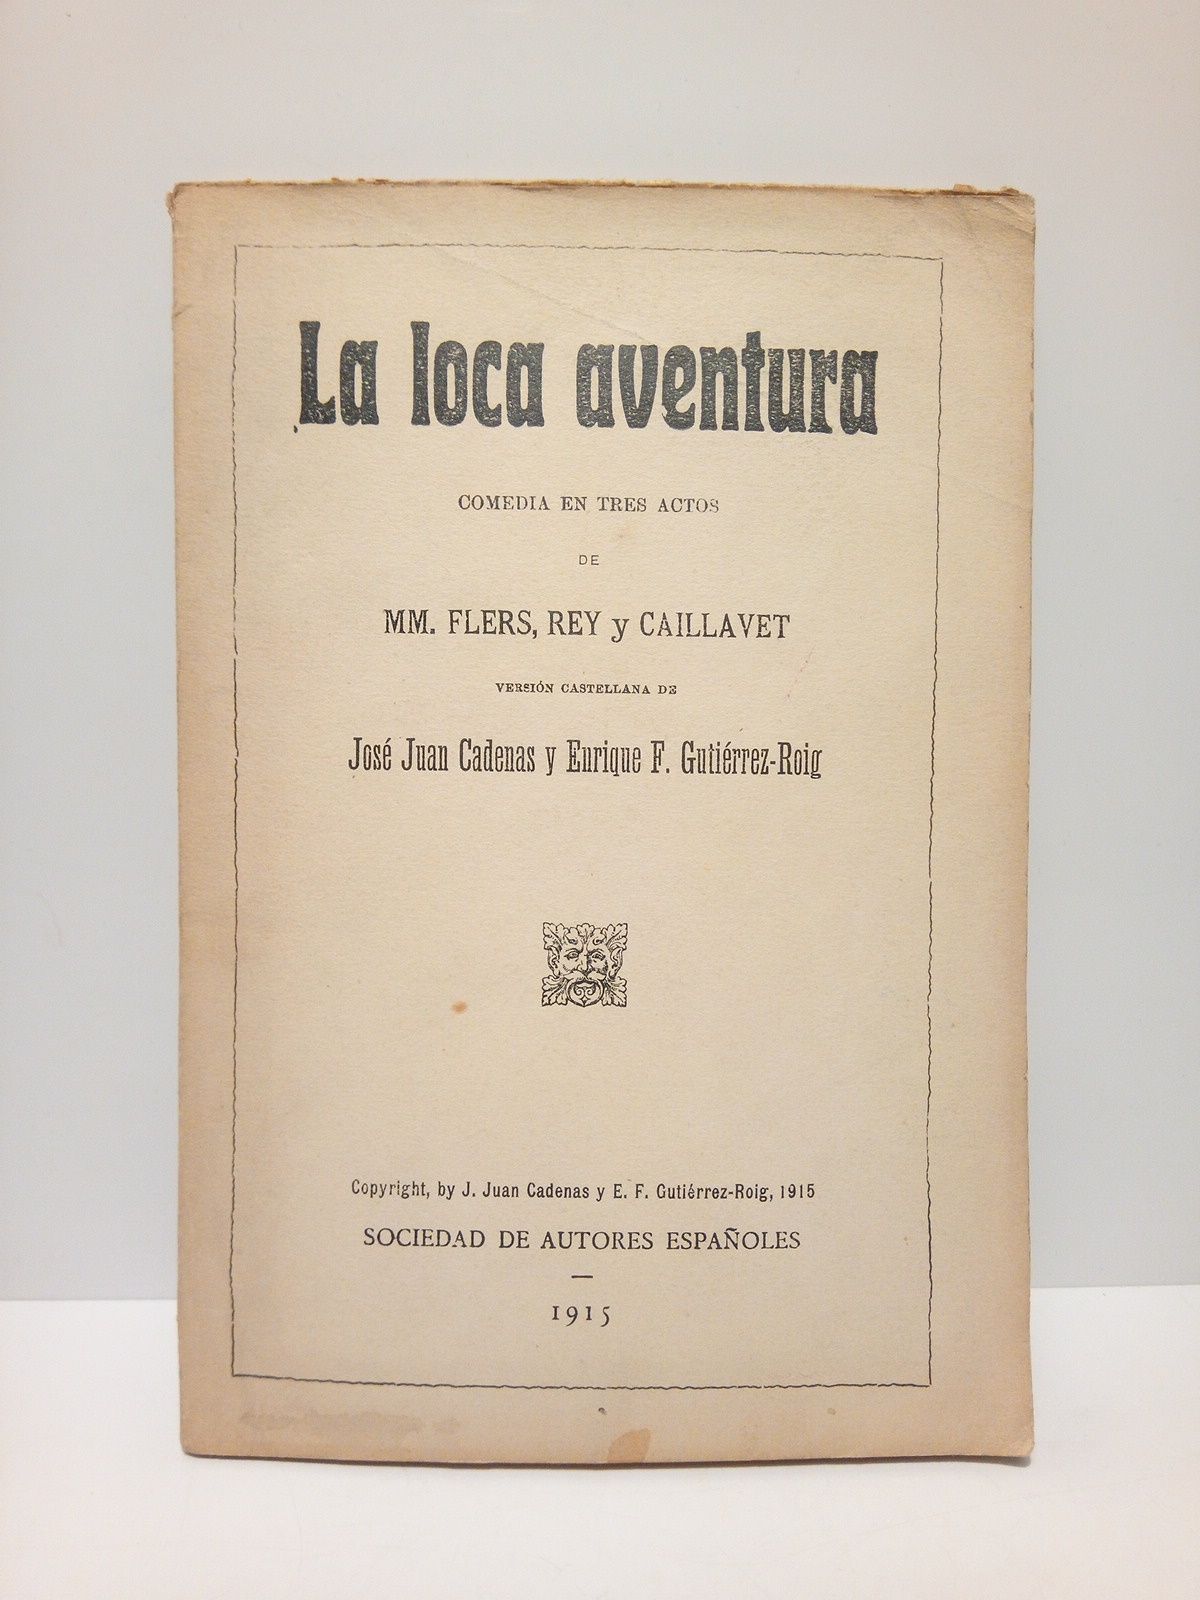 FLERS, Rey y Caillavet, MM. - La loca aventura. (Comedia en tres actos) /  Versin castellana de Jos Juan Cadenas y Enrique F. Gutirrez-Roig